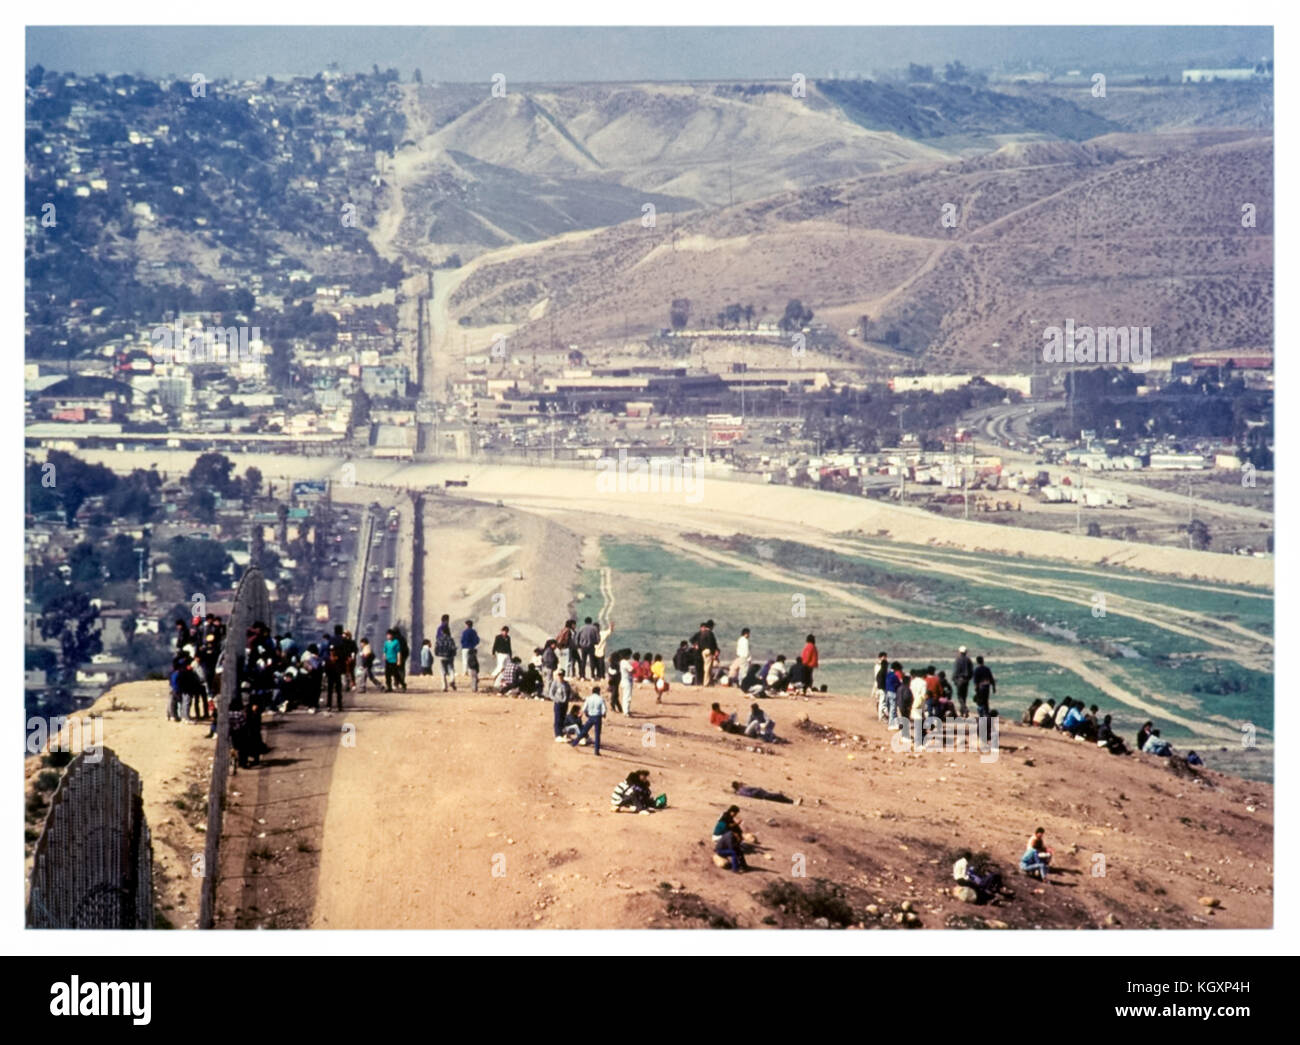 US-Mexique frontière internationale entre Tijuana, Mexique (à gauche) et San Diego, Californie (droite) ; les immigrants illégaux à l'encontre de la clôture de fer ondulé dans les années 1980. Voir plus d'informations ci-dessous. Banque D'Images